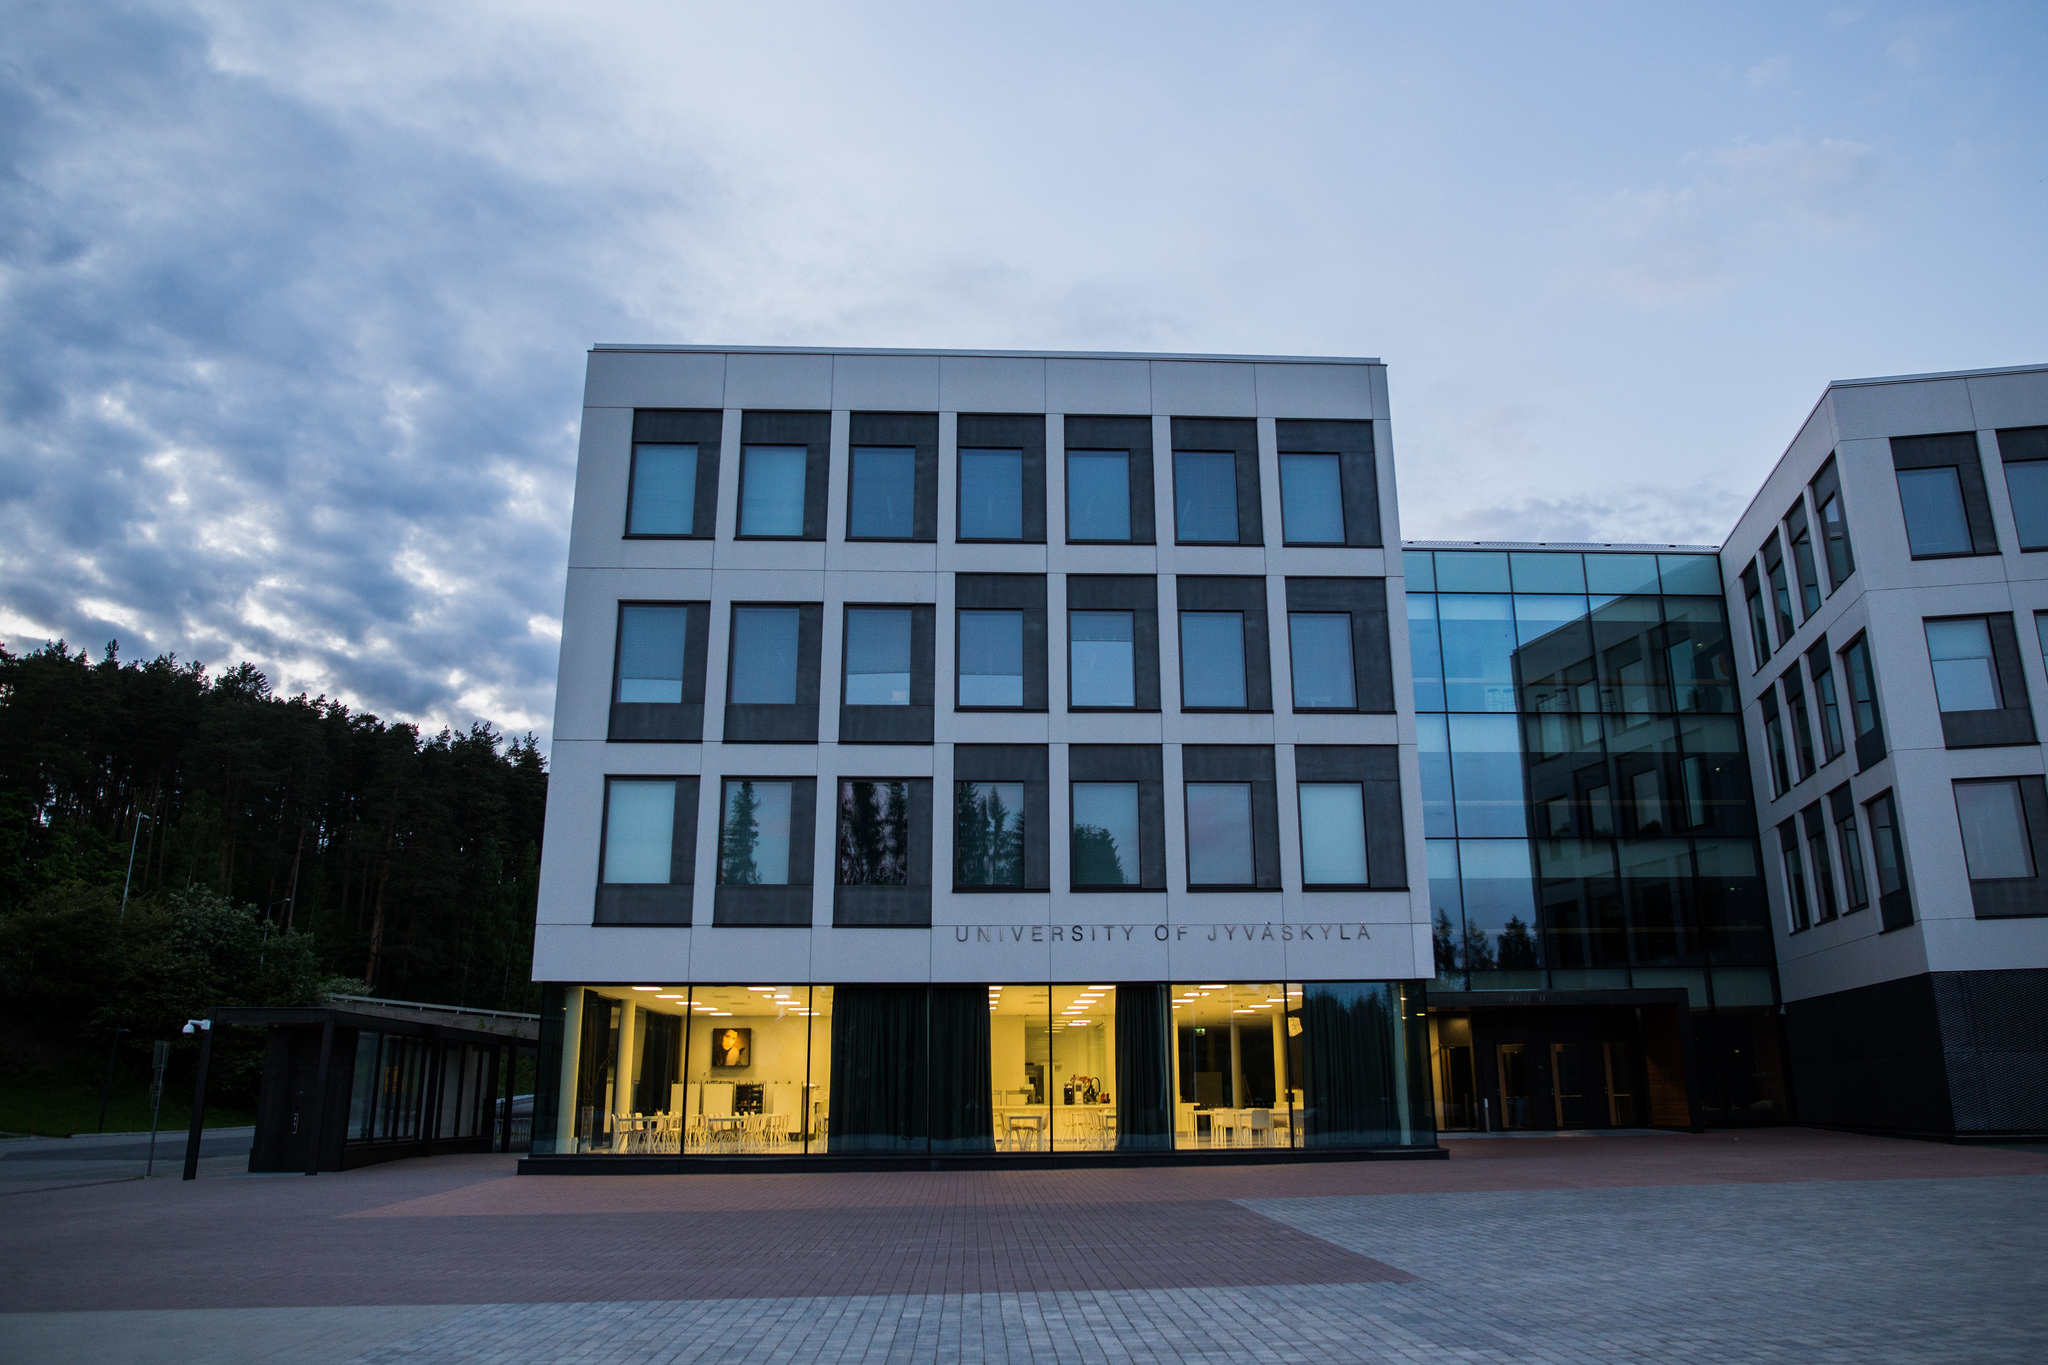 The University of Jyväskylä